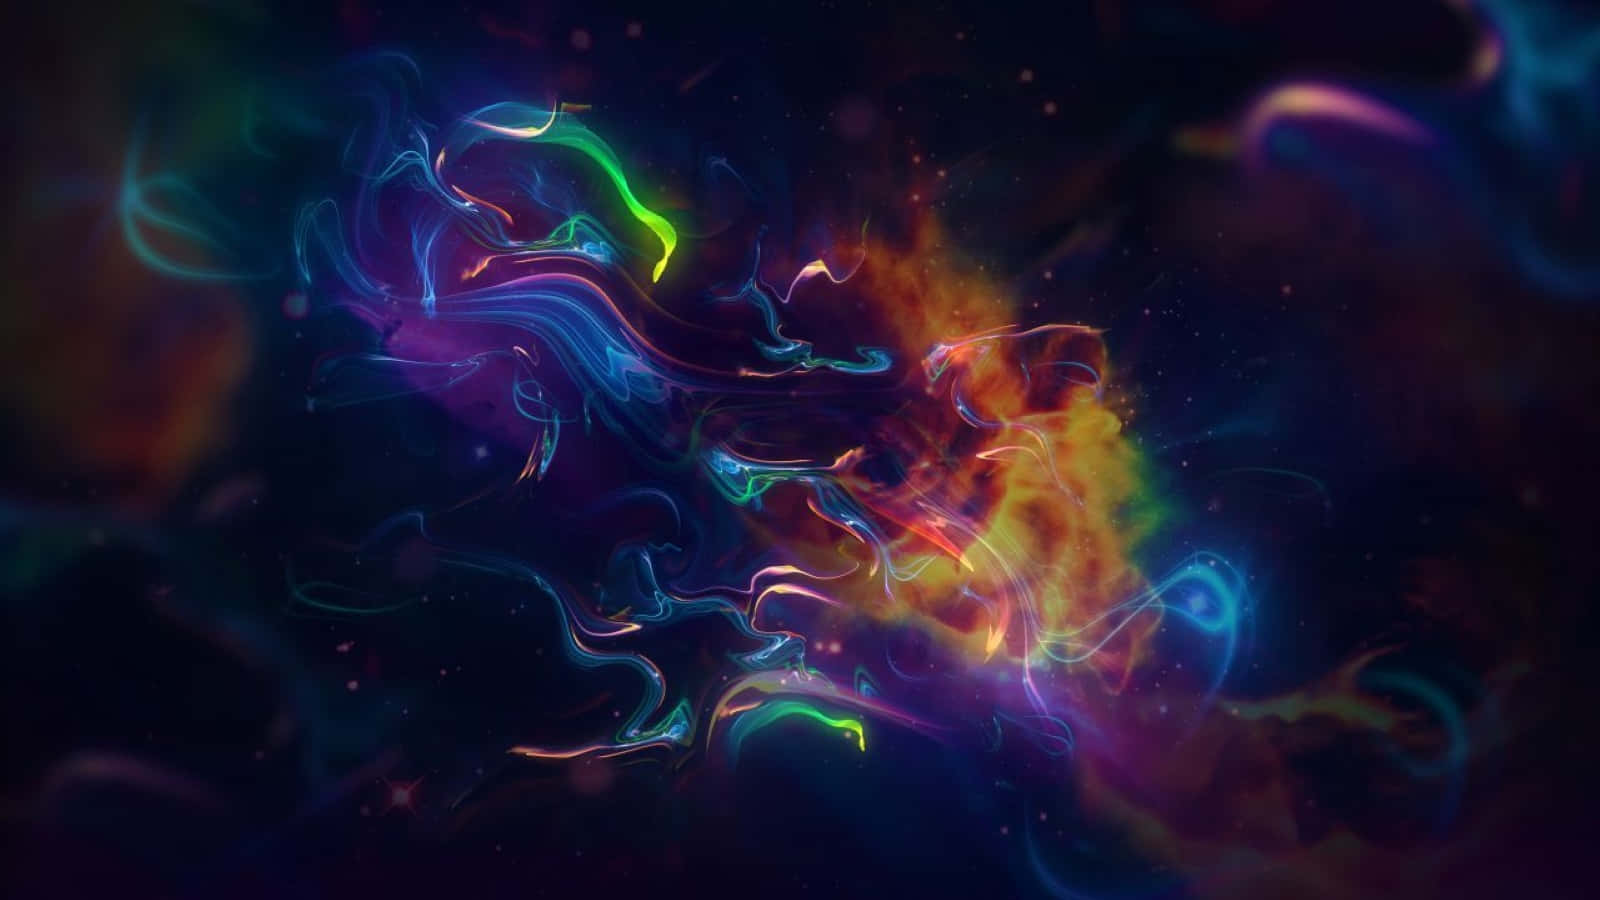 Nebulosaespacial Colorida Y Estrellas. Fondo de pantalla